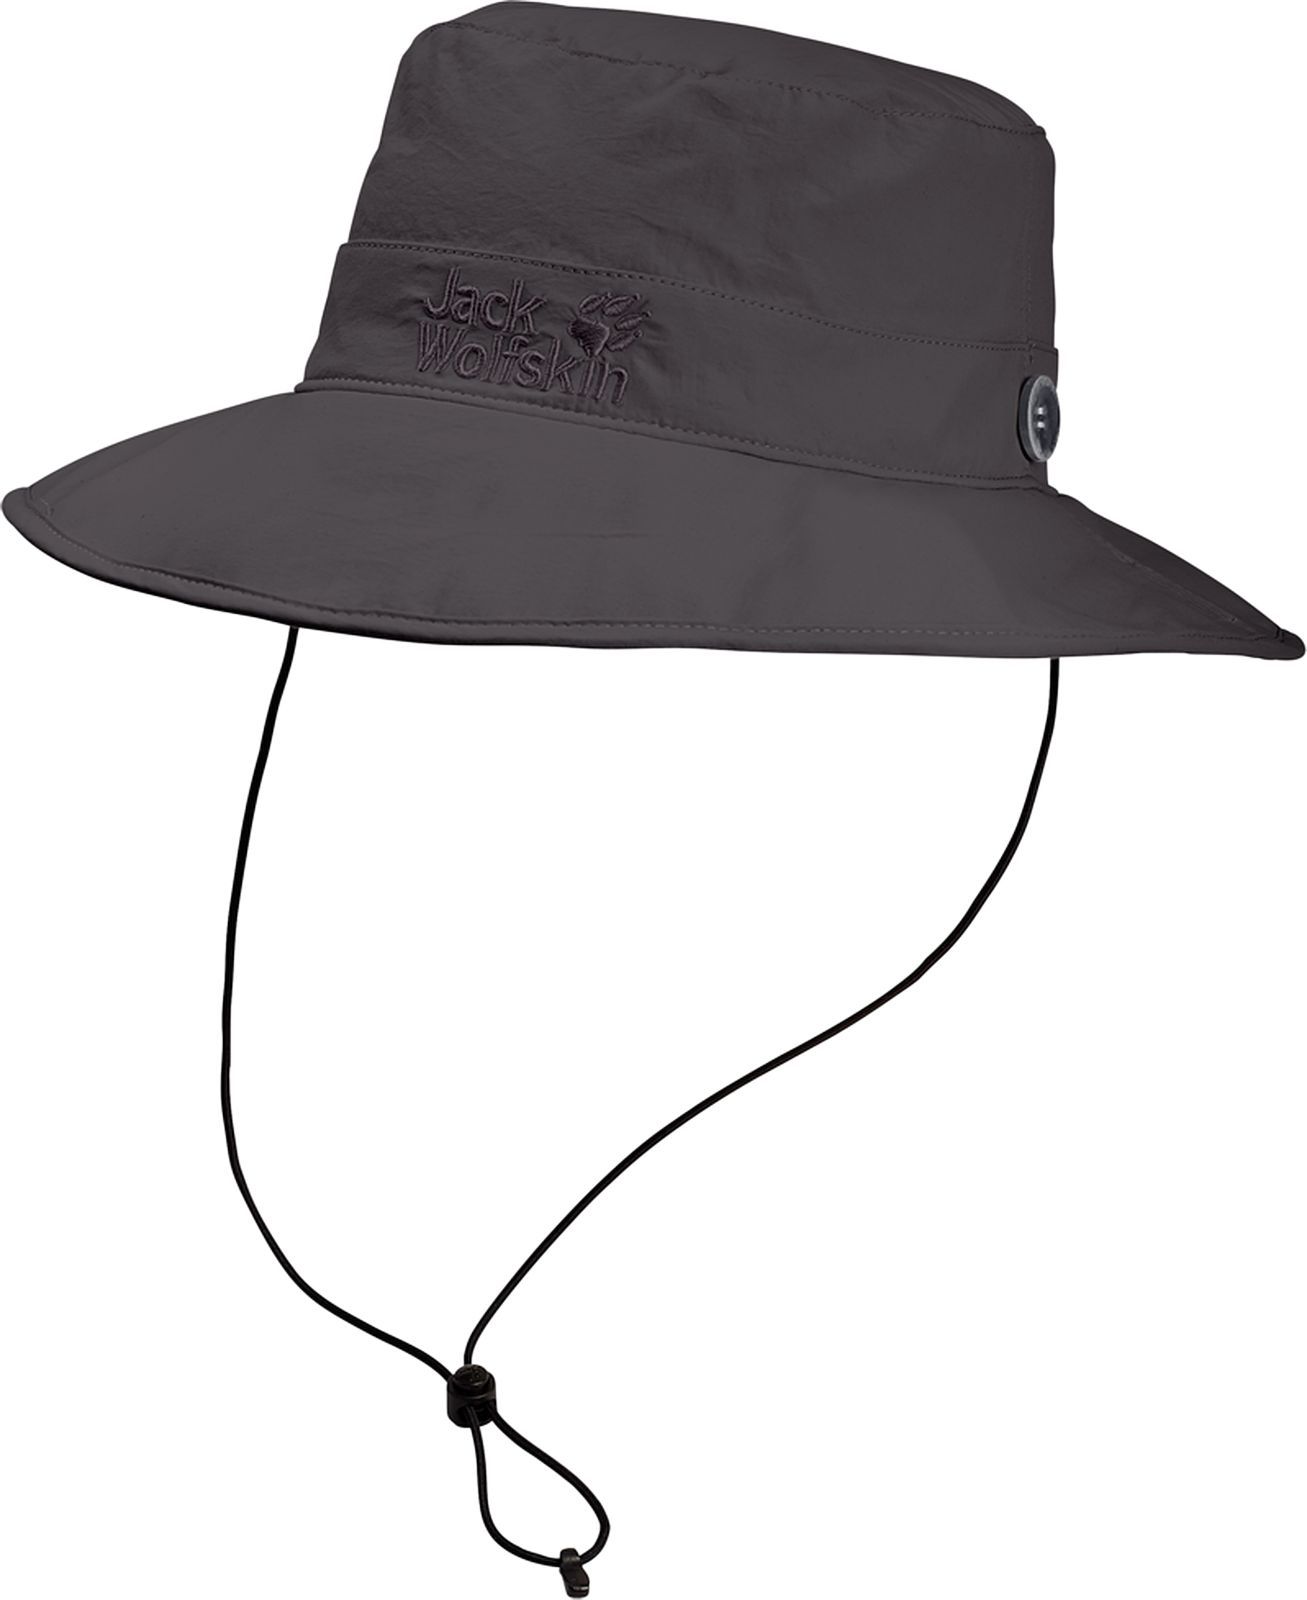  Jack Wolfskin Supplex Mesh Hat, : -. 1902042-6032.  L (57/60)